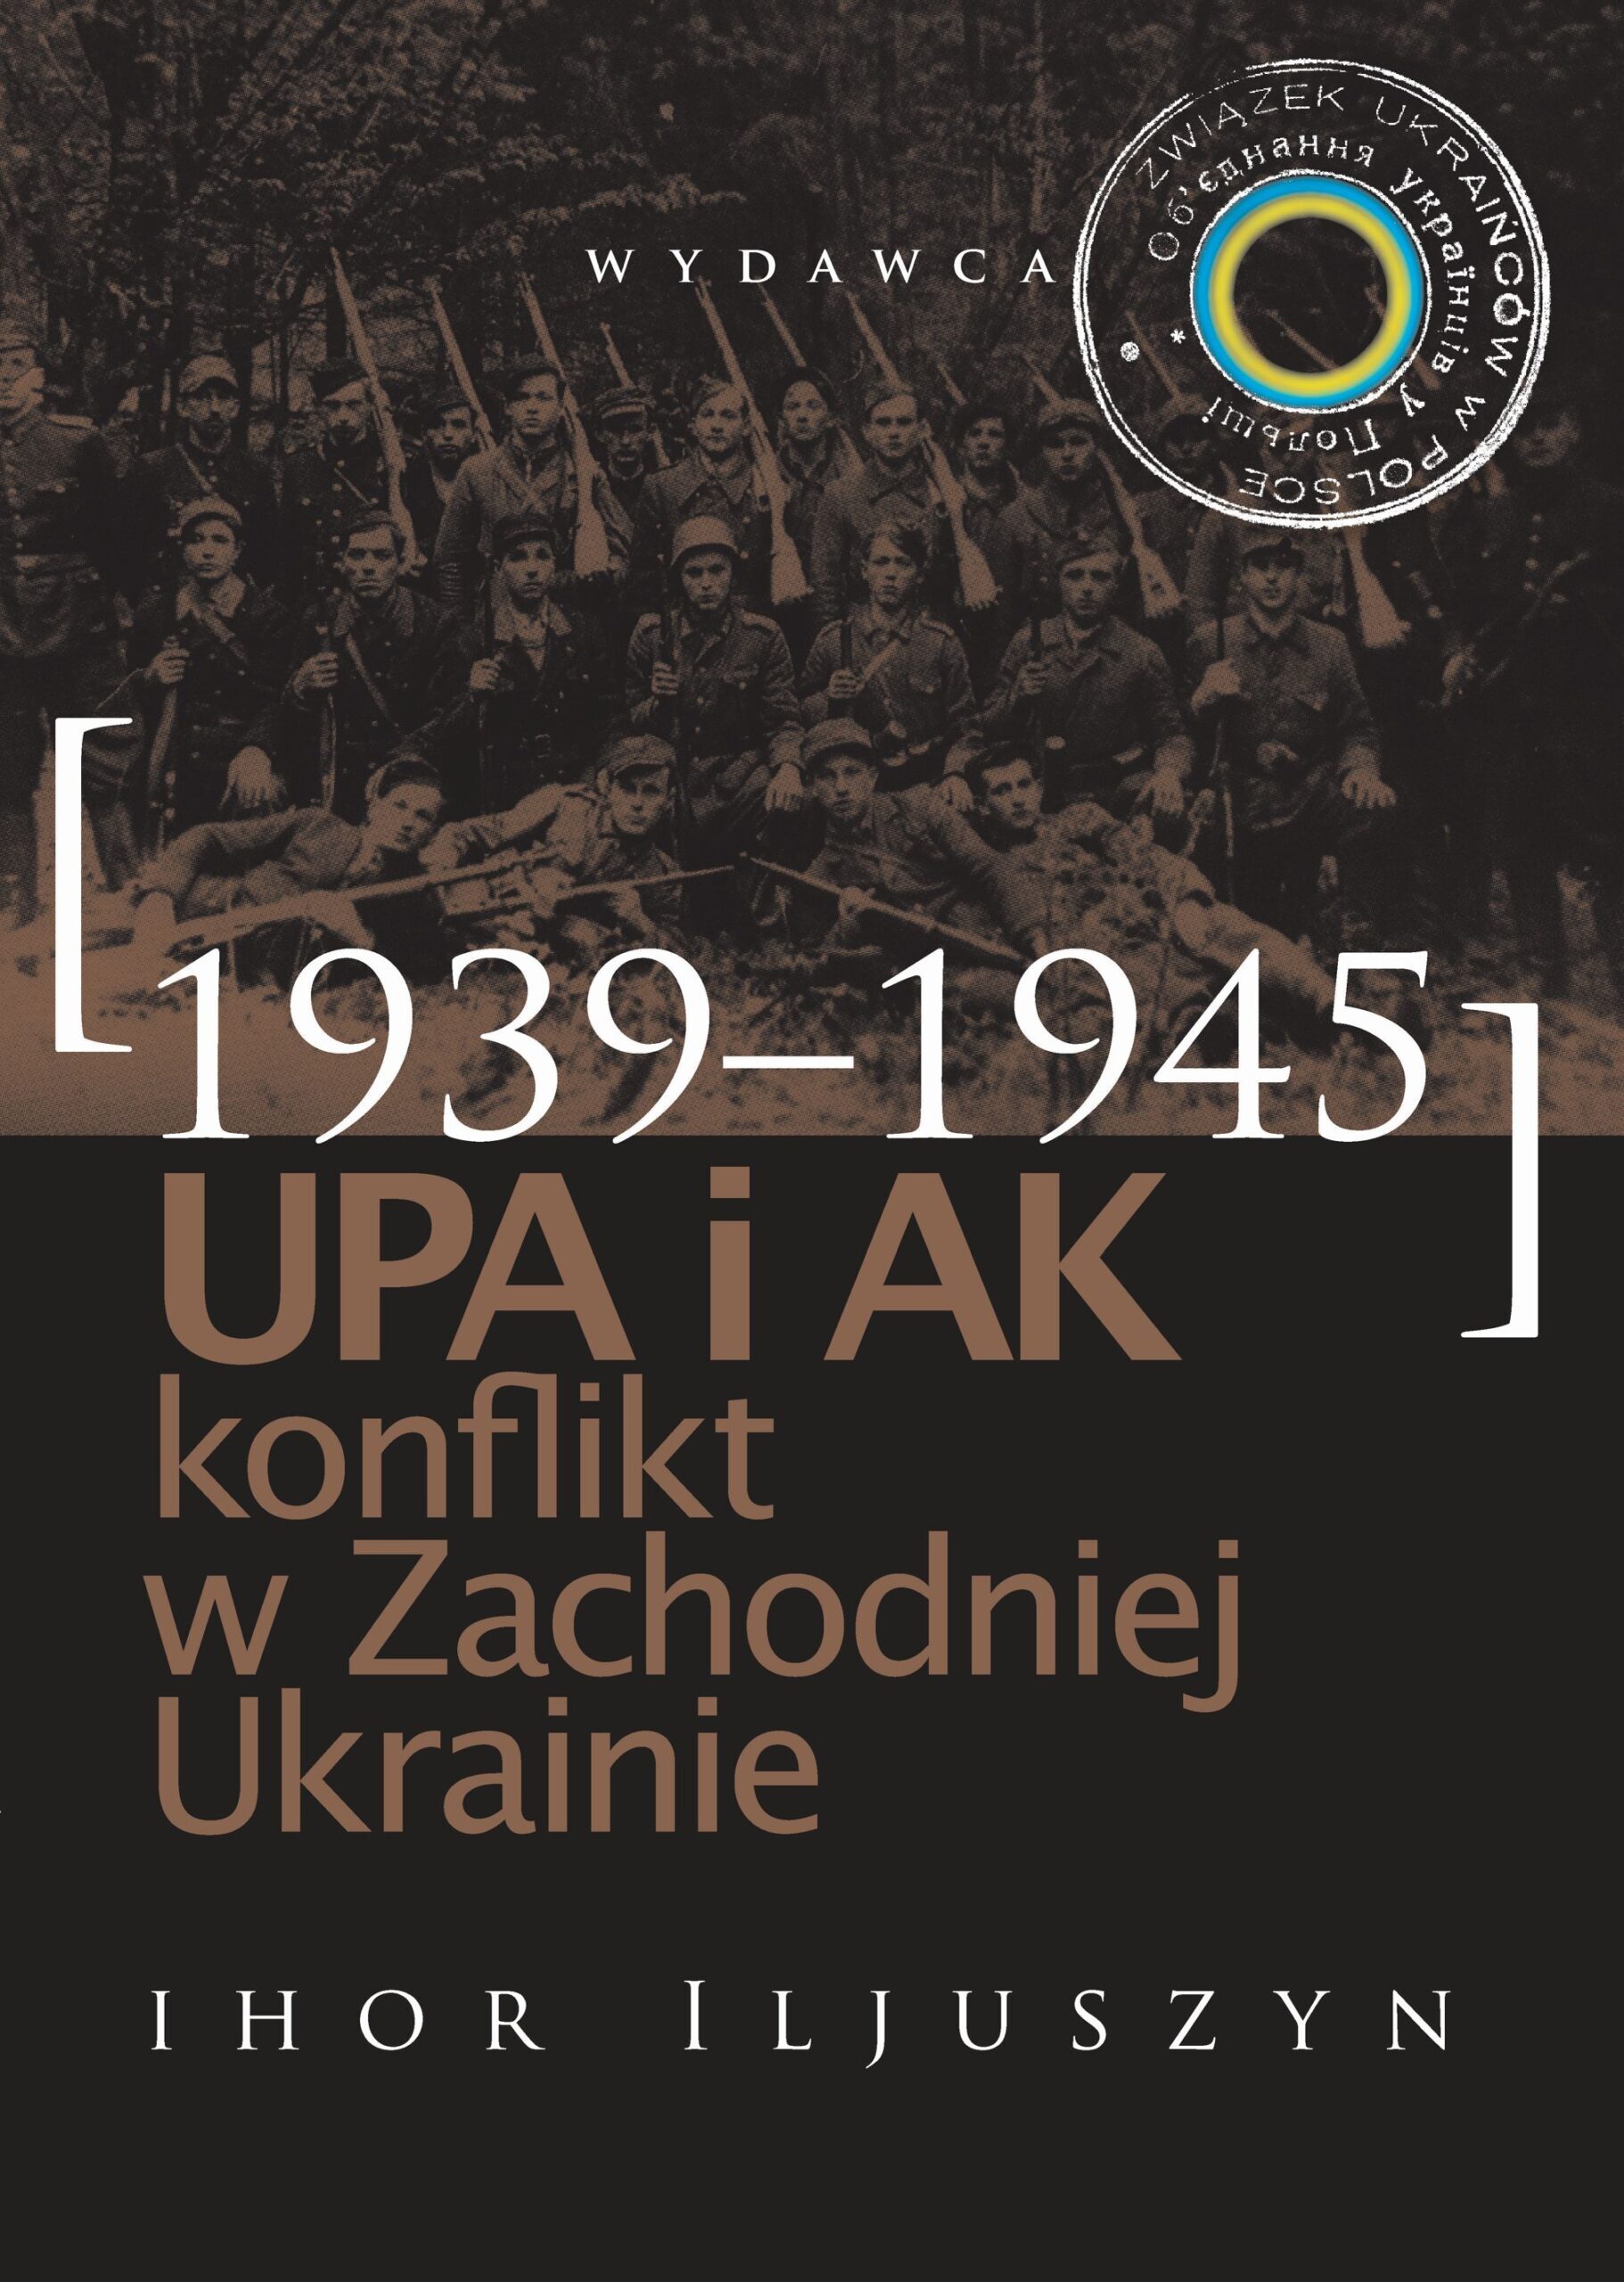 UPA i AK konflikt w Zachodniej Ukrainie 1939-1945 (I.Iljuszyn)